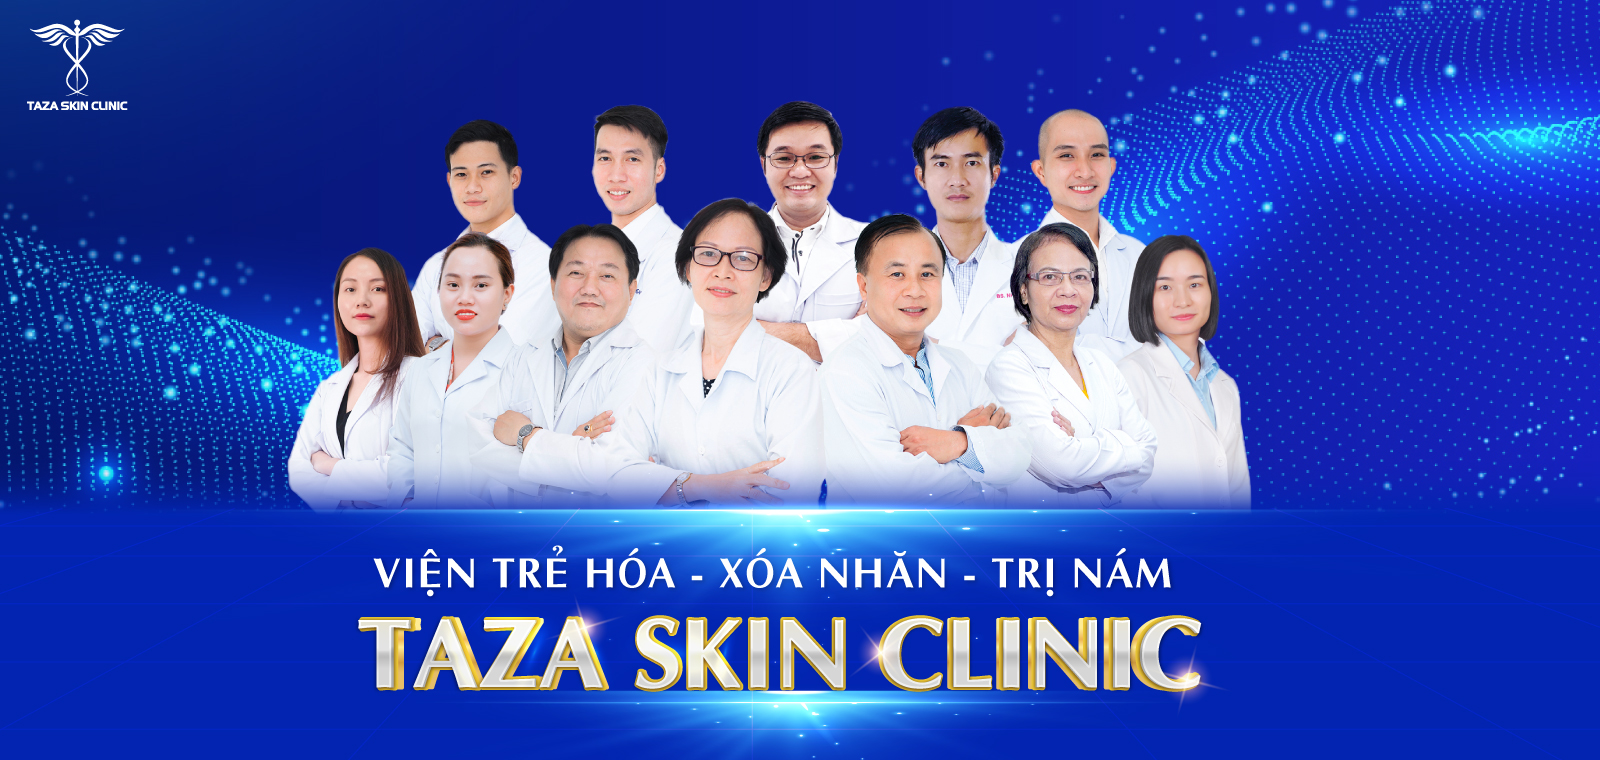 Taza Skin Clinic ảnh 1